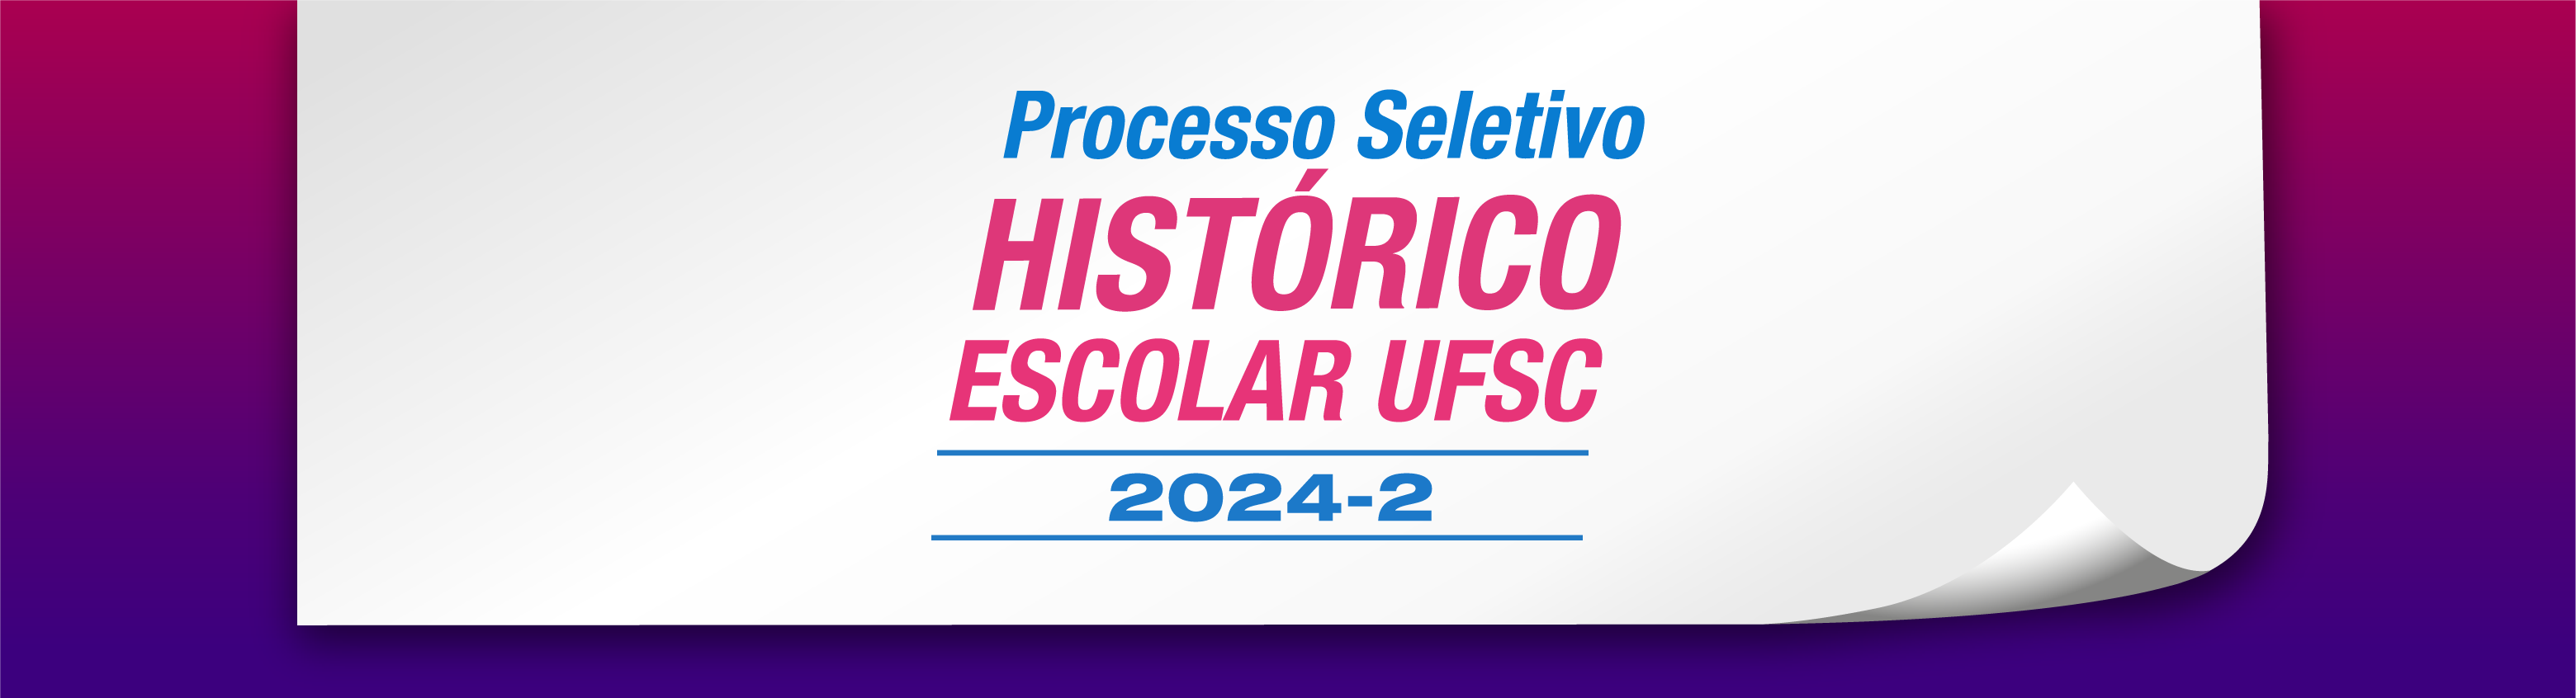 Processo Seletivo por Histórico Escolar UFSC 2024-2